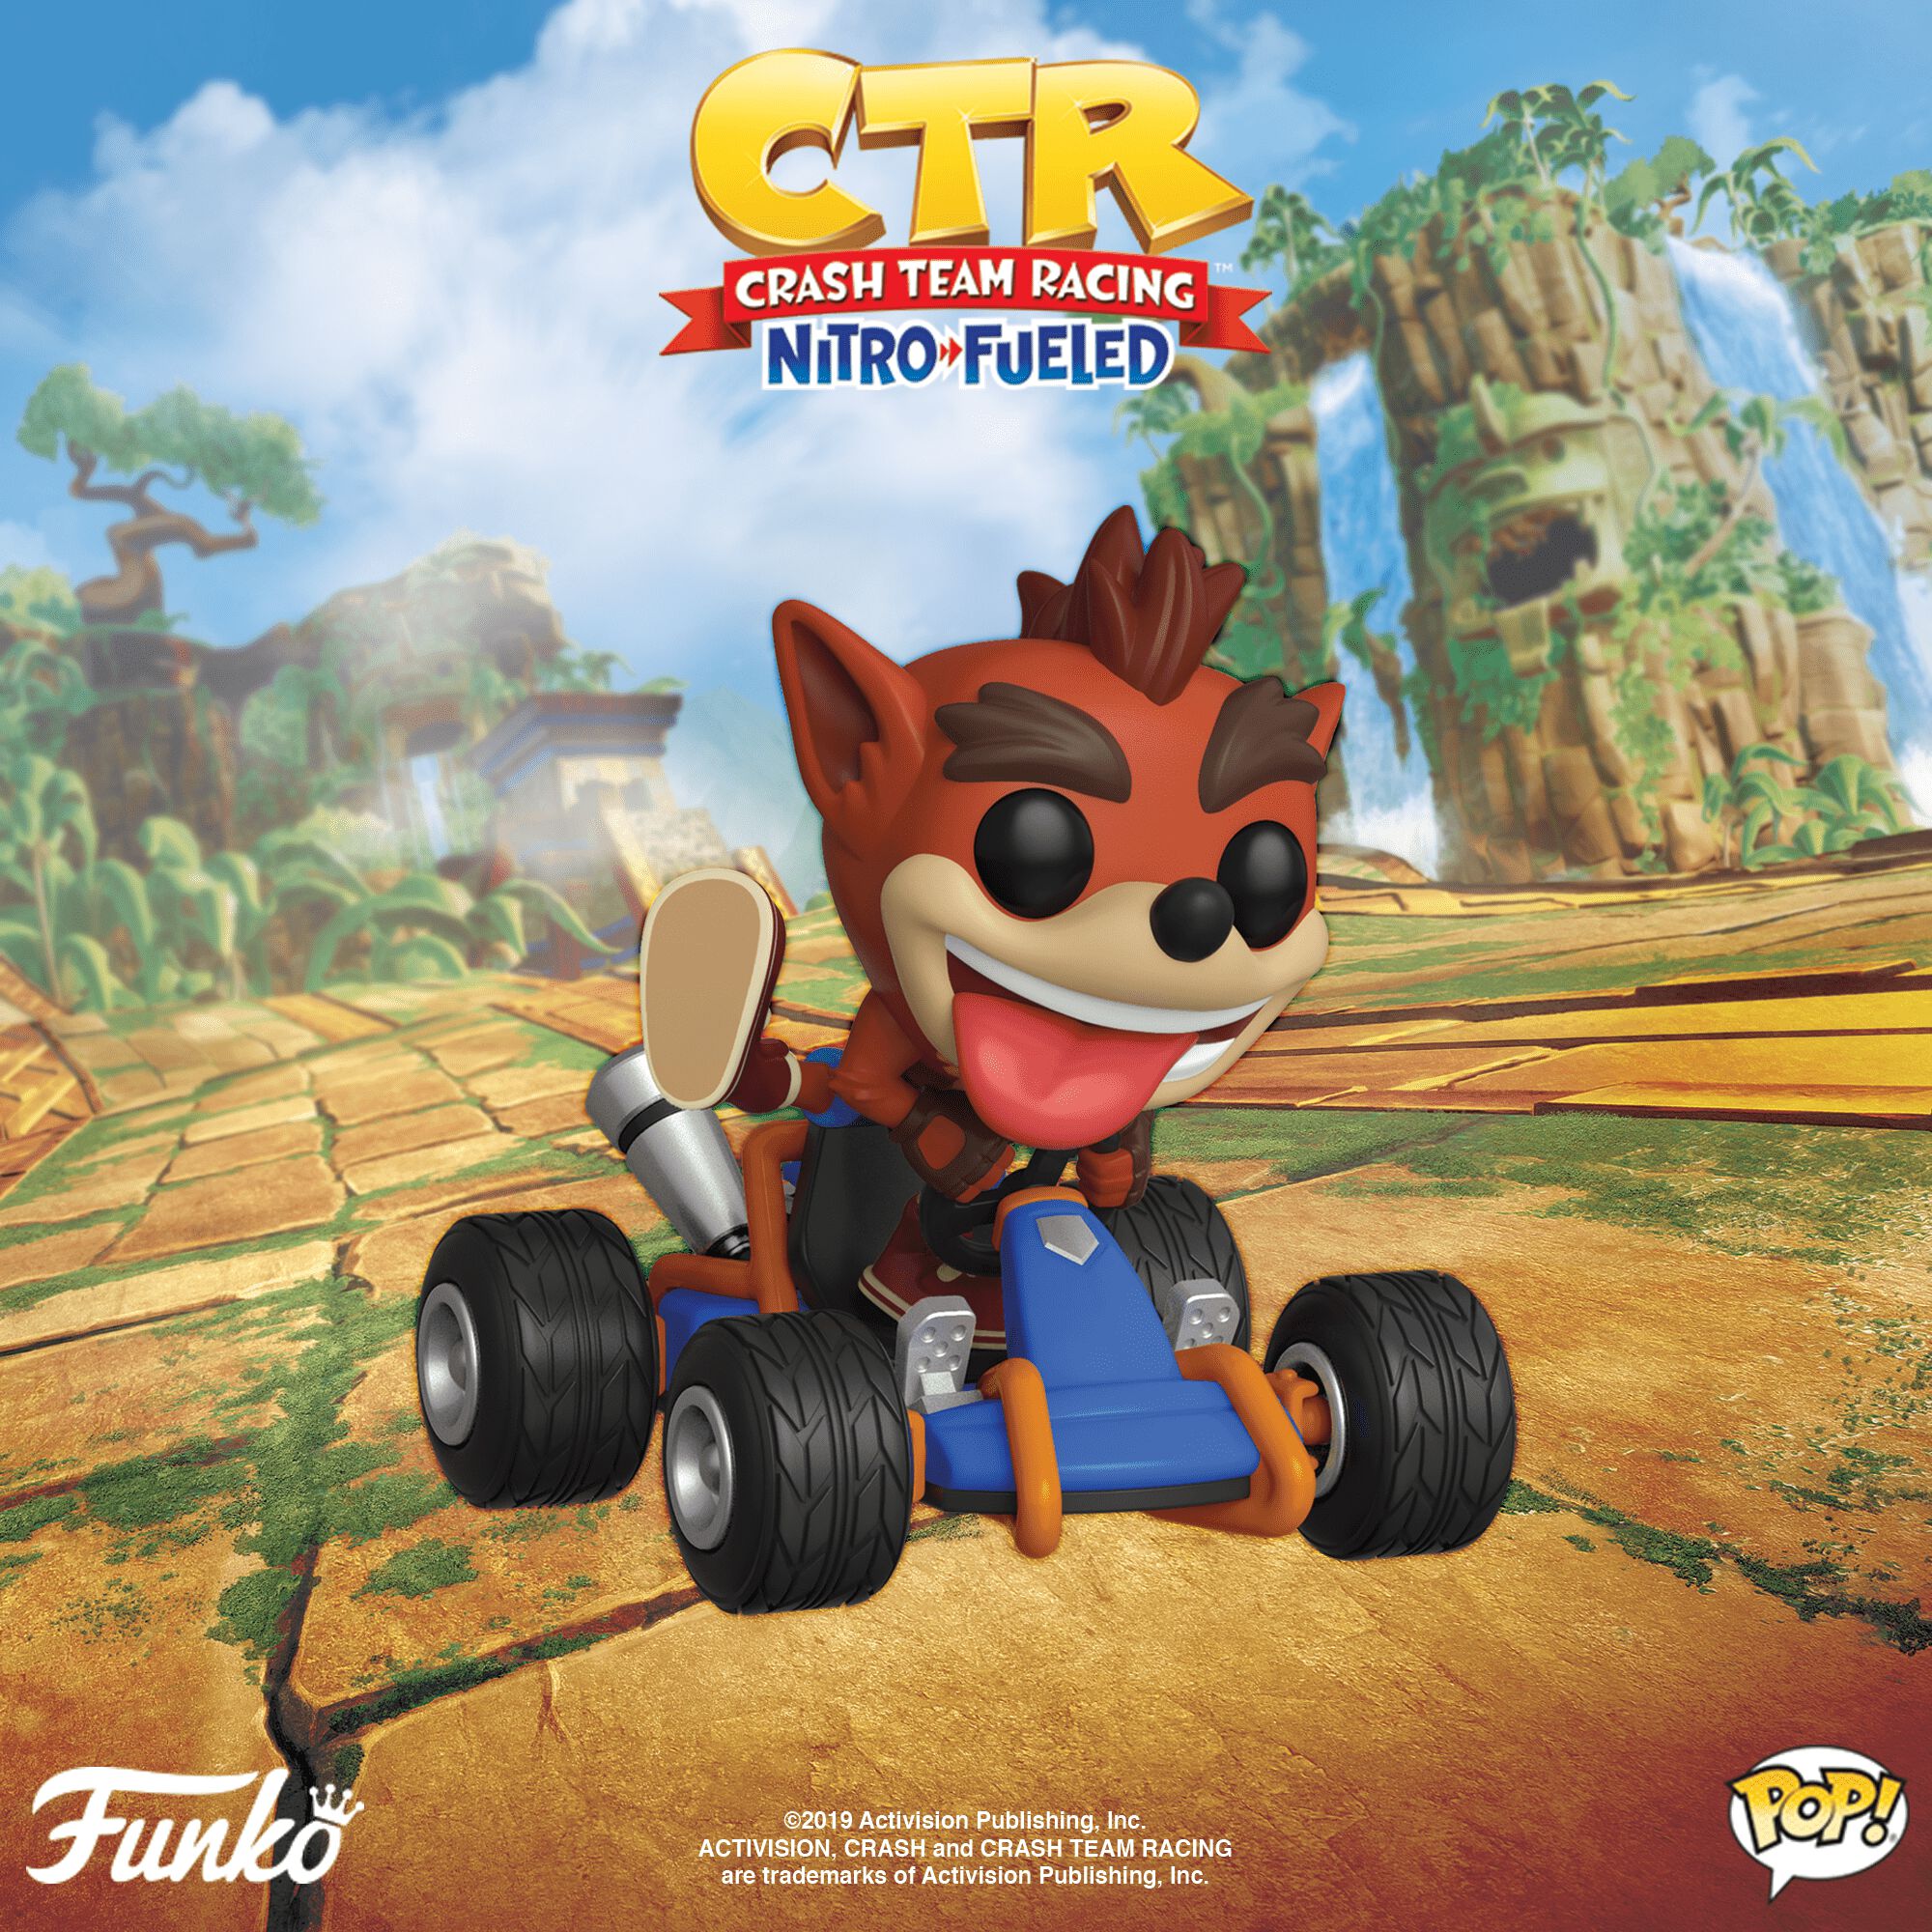 Coming Soon: Crash Bandicoot Pop! Rides!